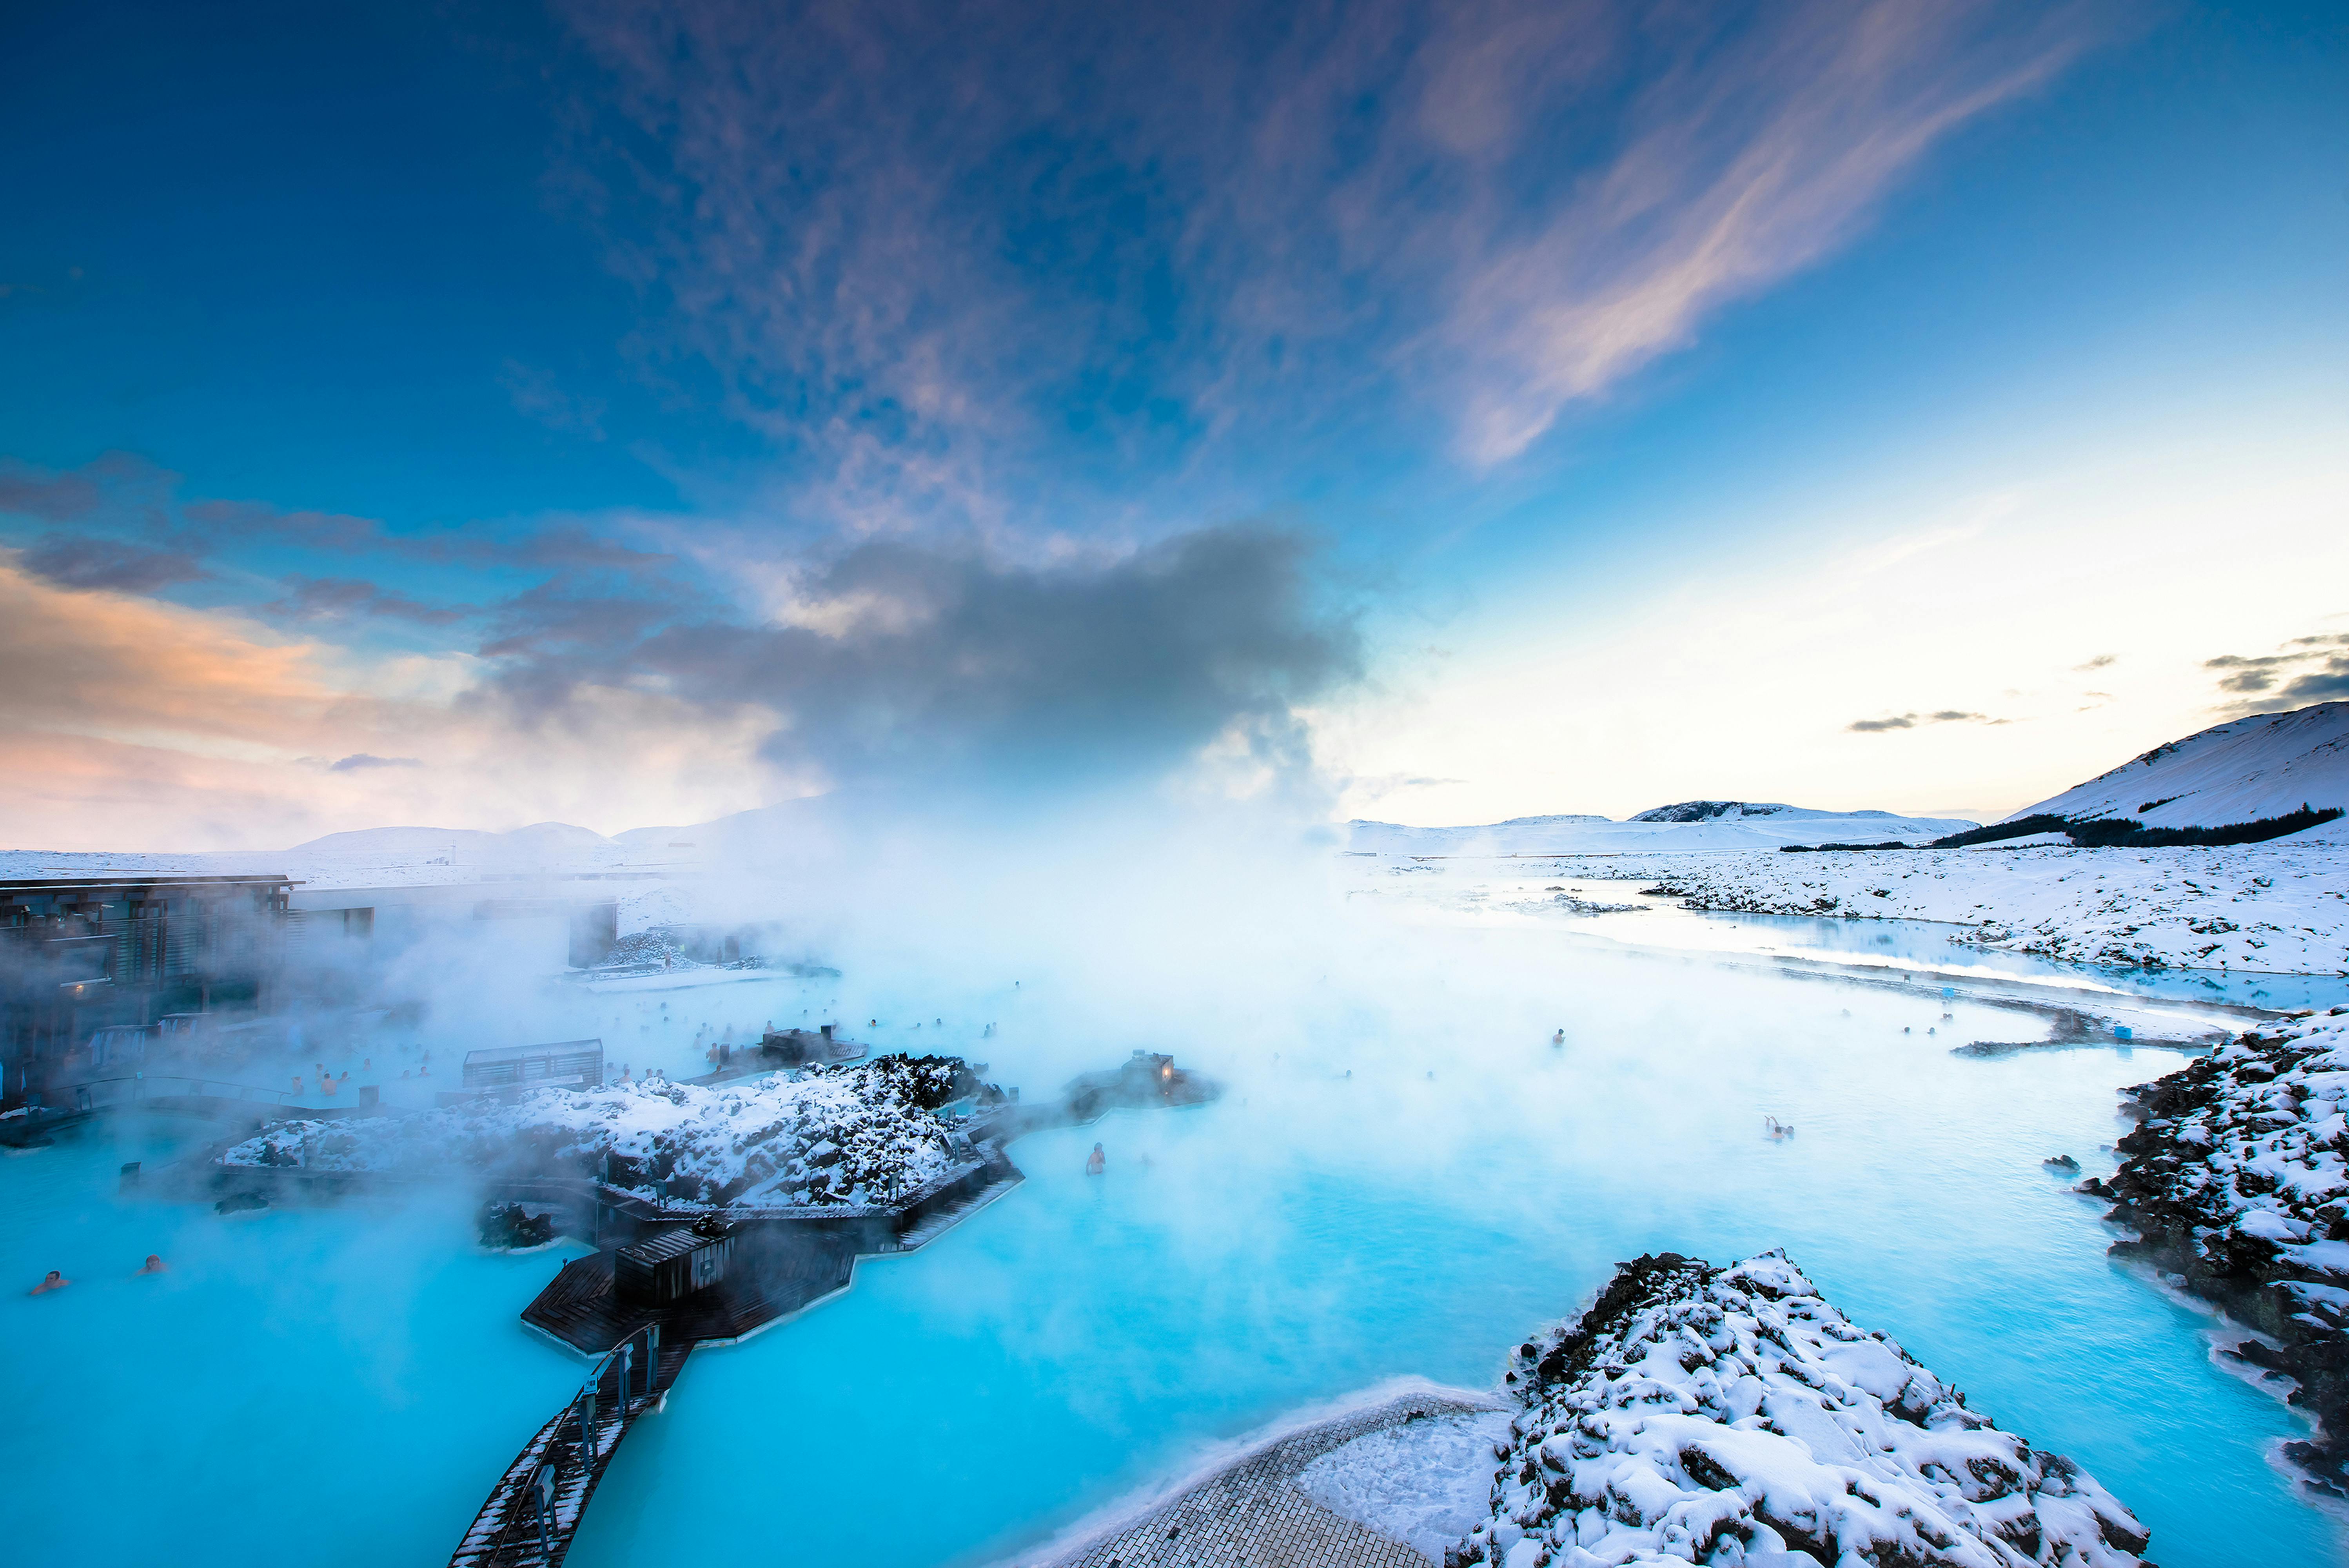 Aprovecha al máximo tus últimas horas en Islandia disfrutando de la Laguna Azul.